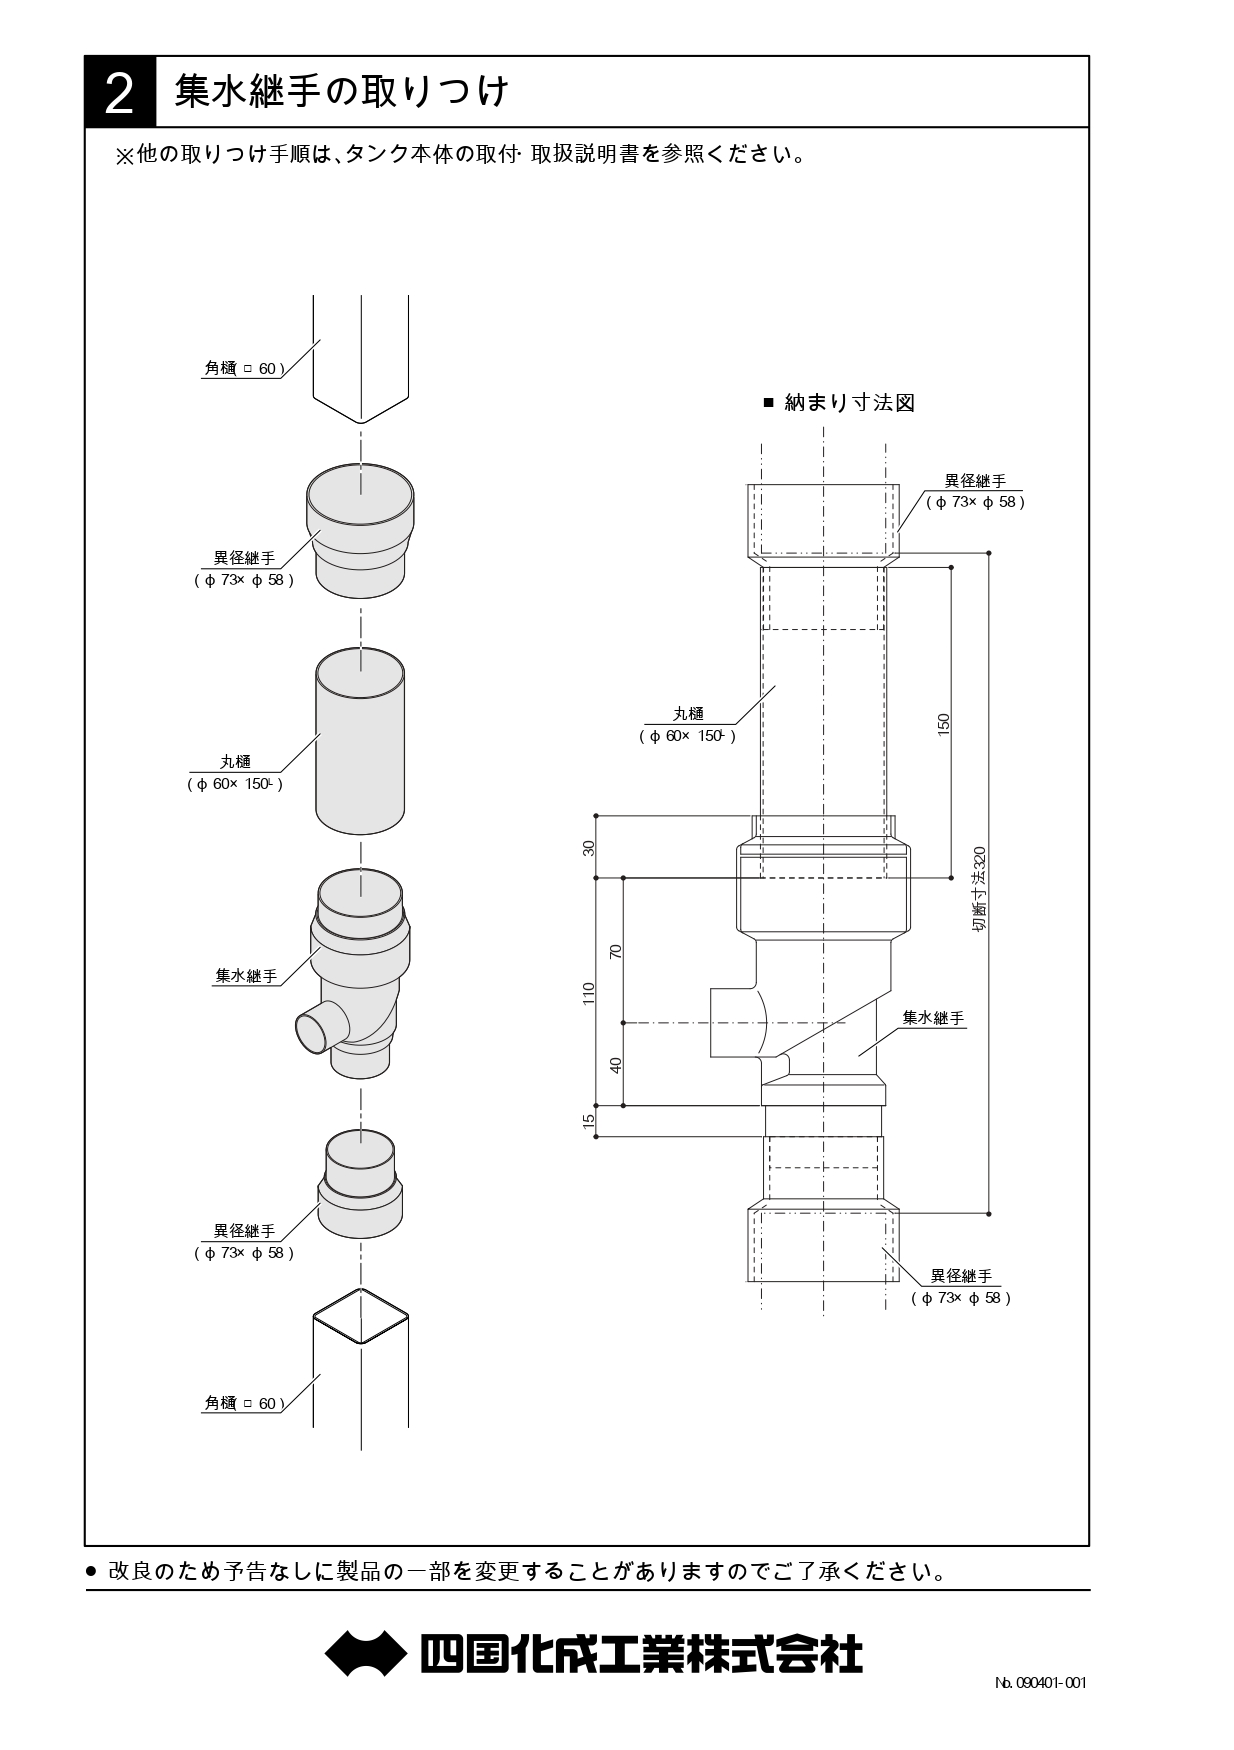 レインキーパーP2型 角樋セット 施工説明書_page-0002